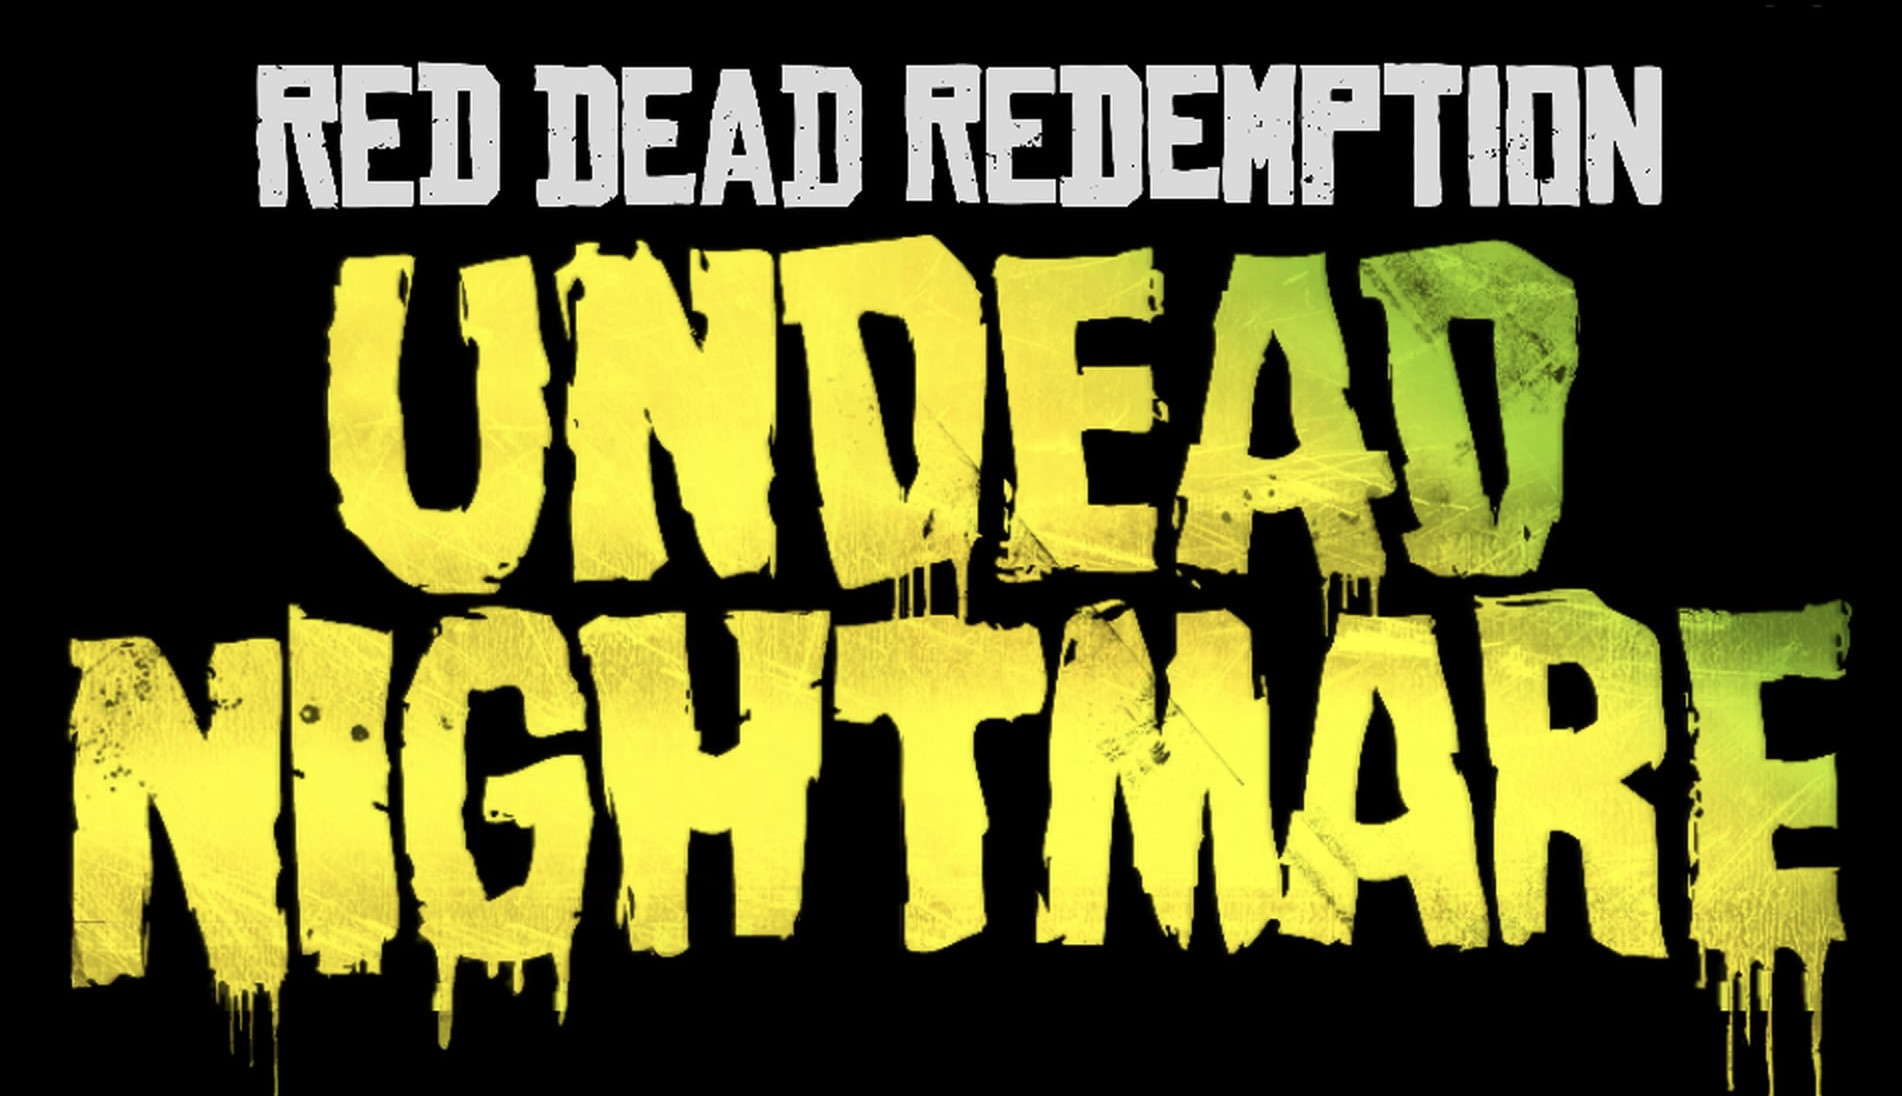 Red Dead Redemption 2 Trophy Guide & Roadmap